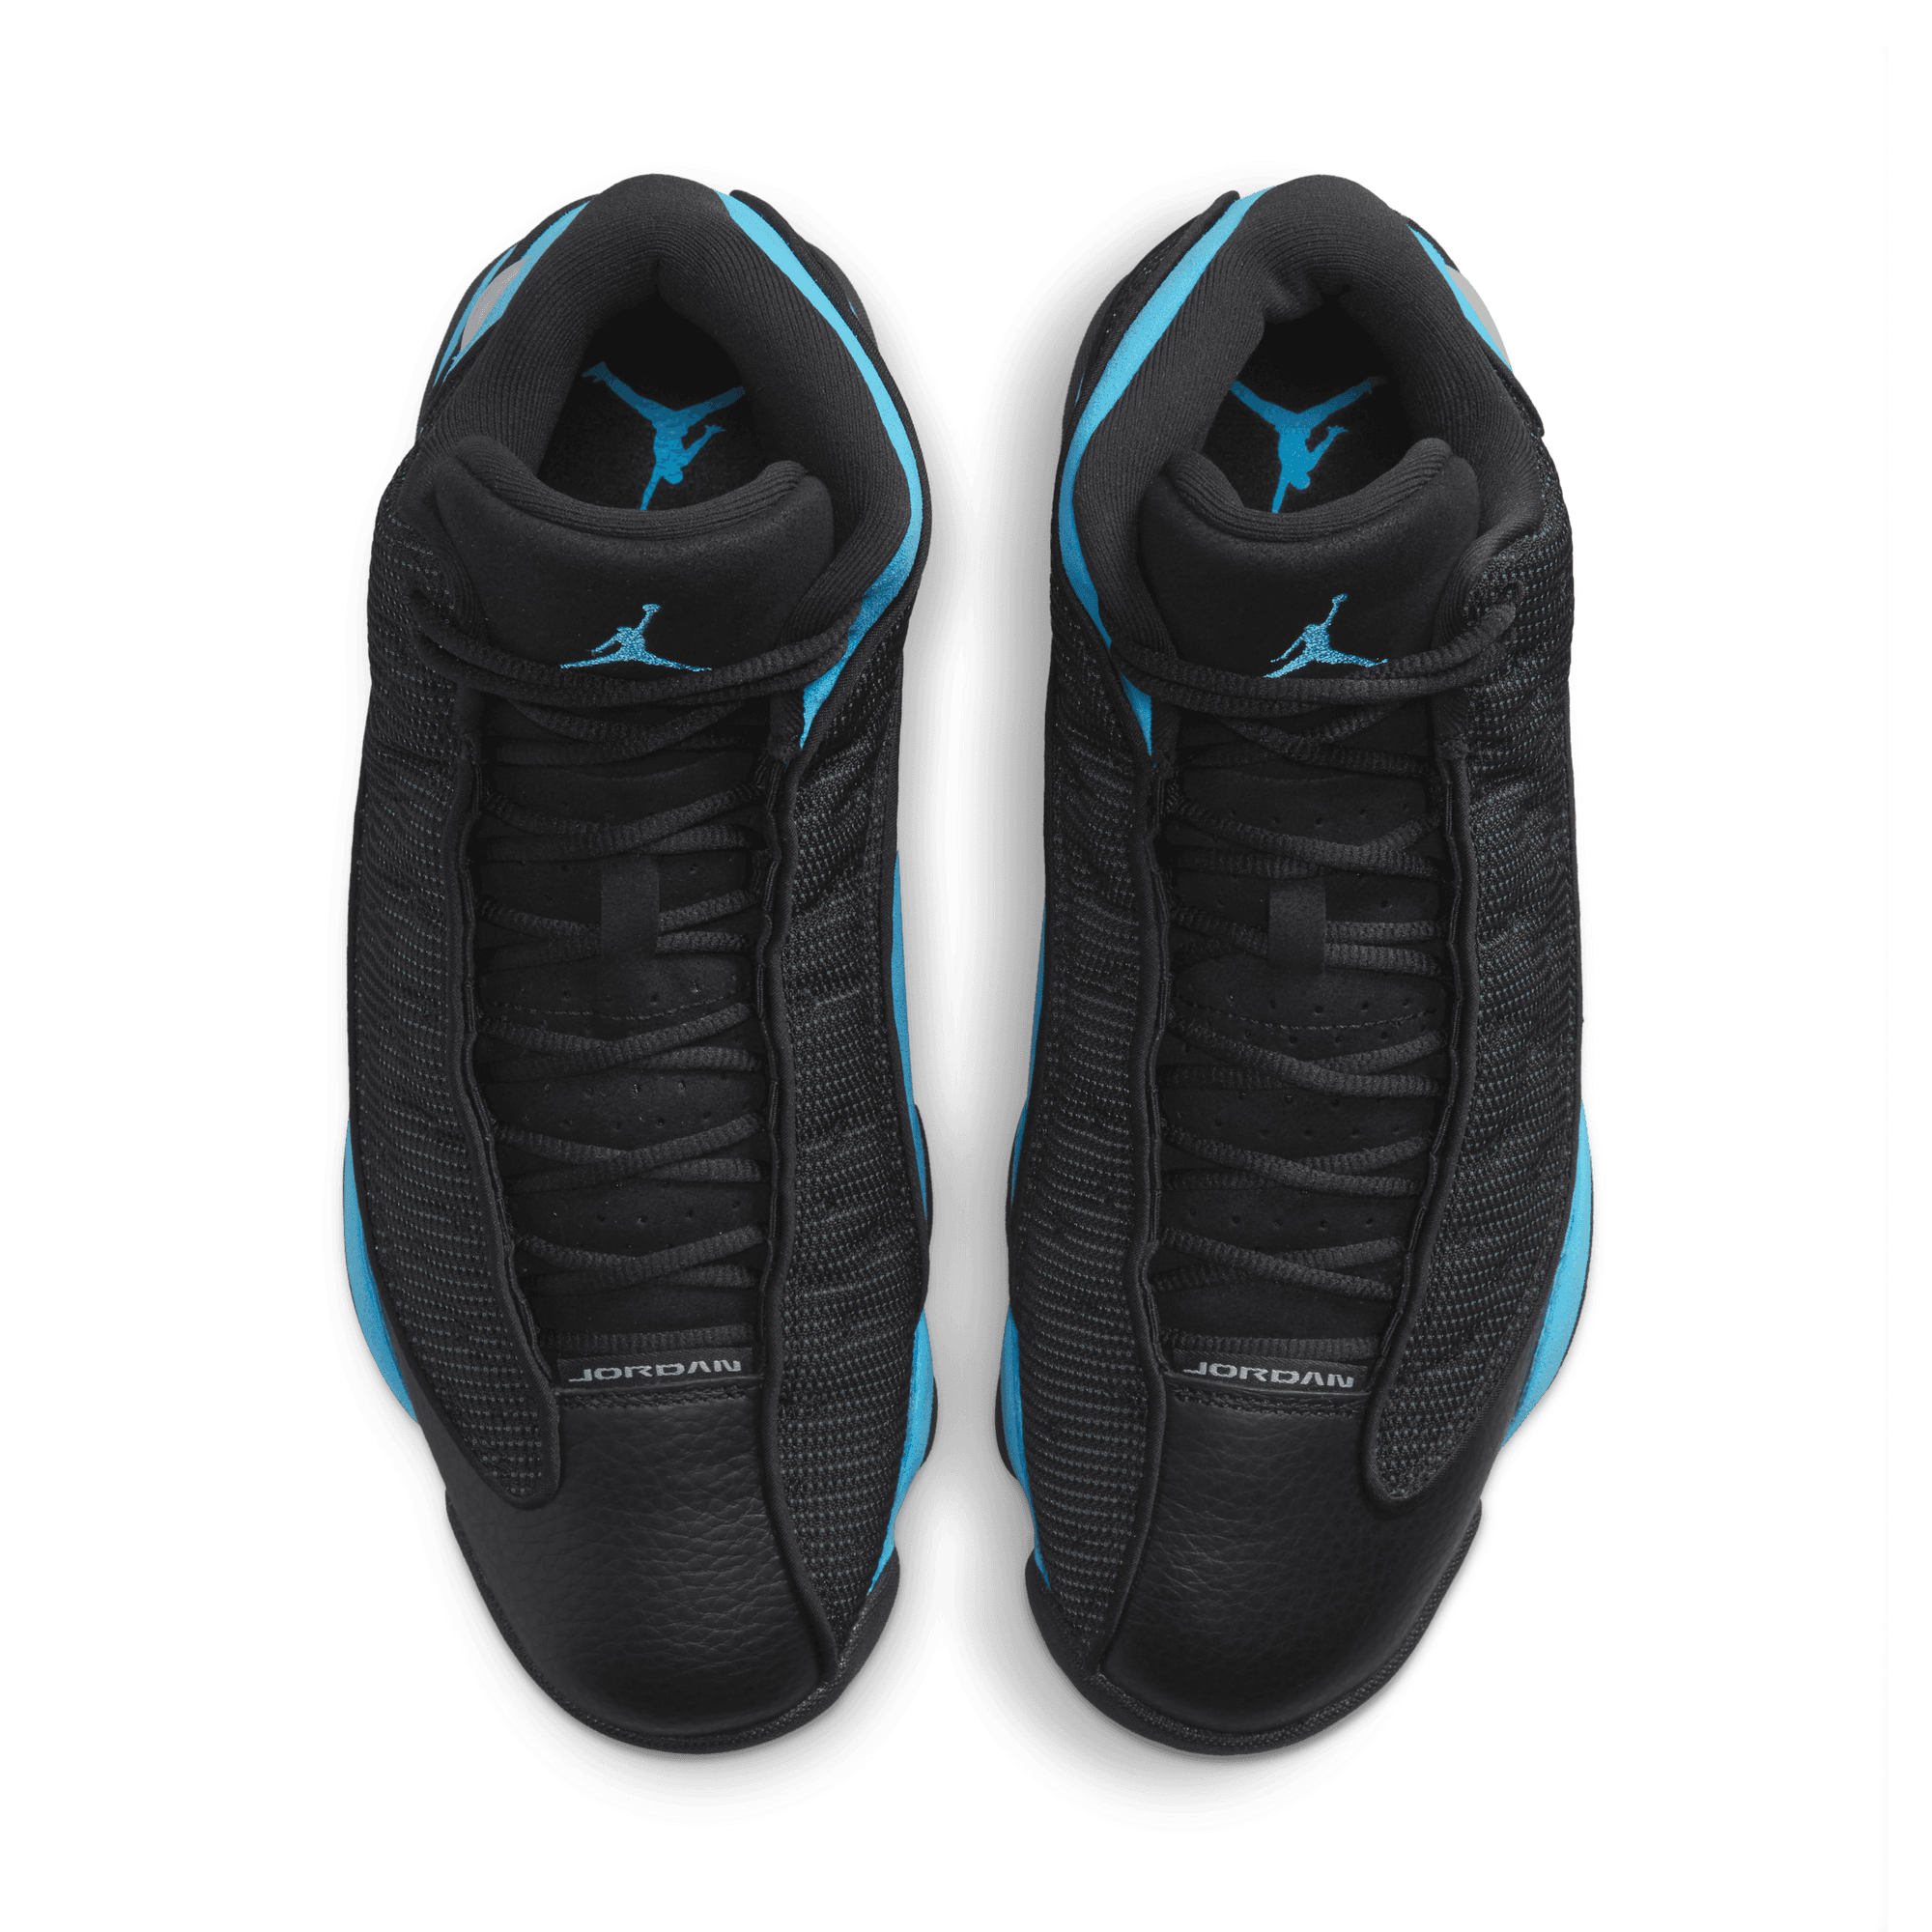 Air Jordan FOOTWEAR Air Jordan 13 Retro Black University Blue - Men's